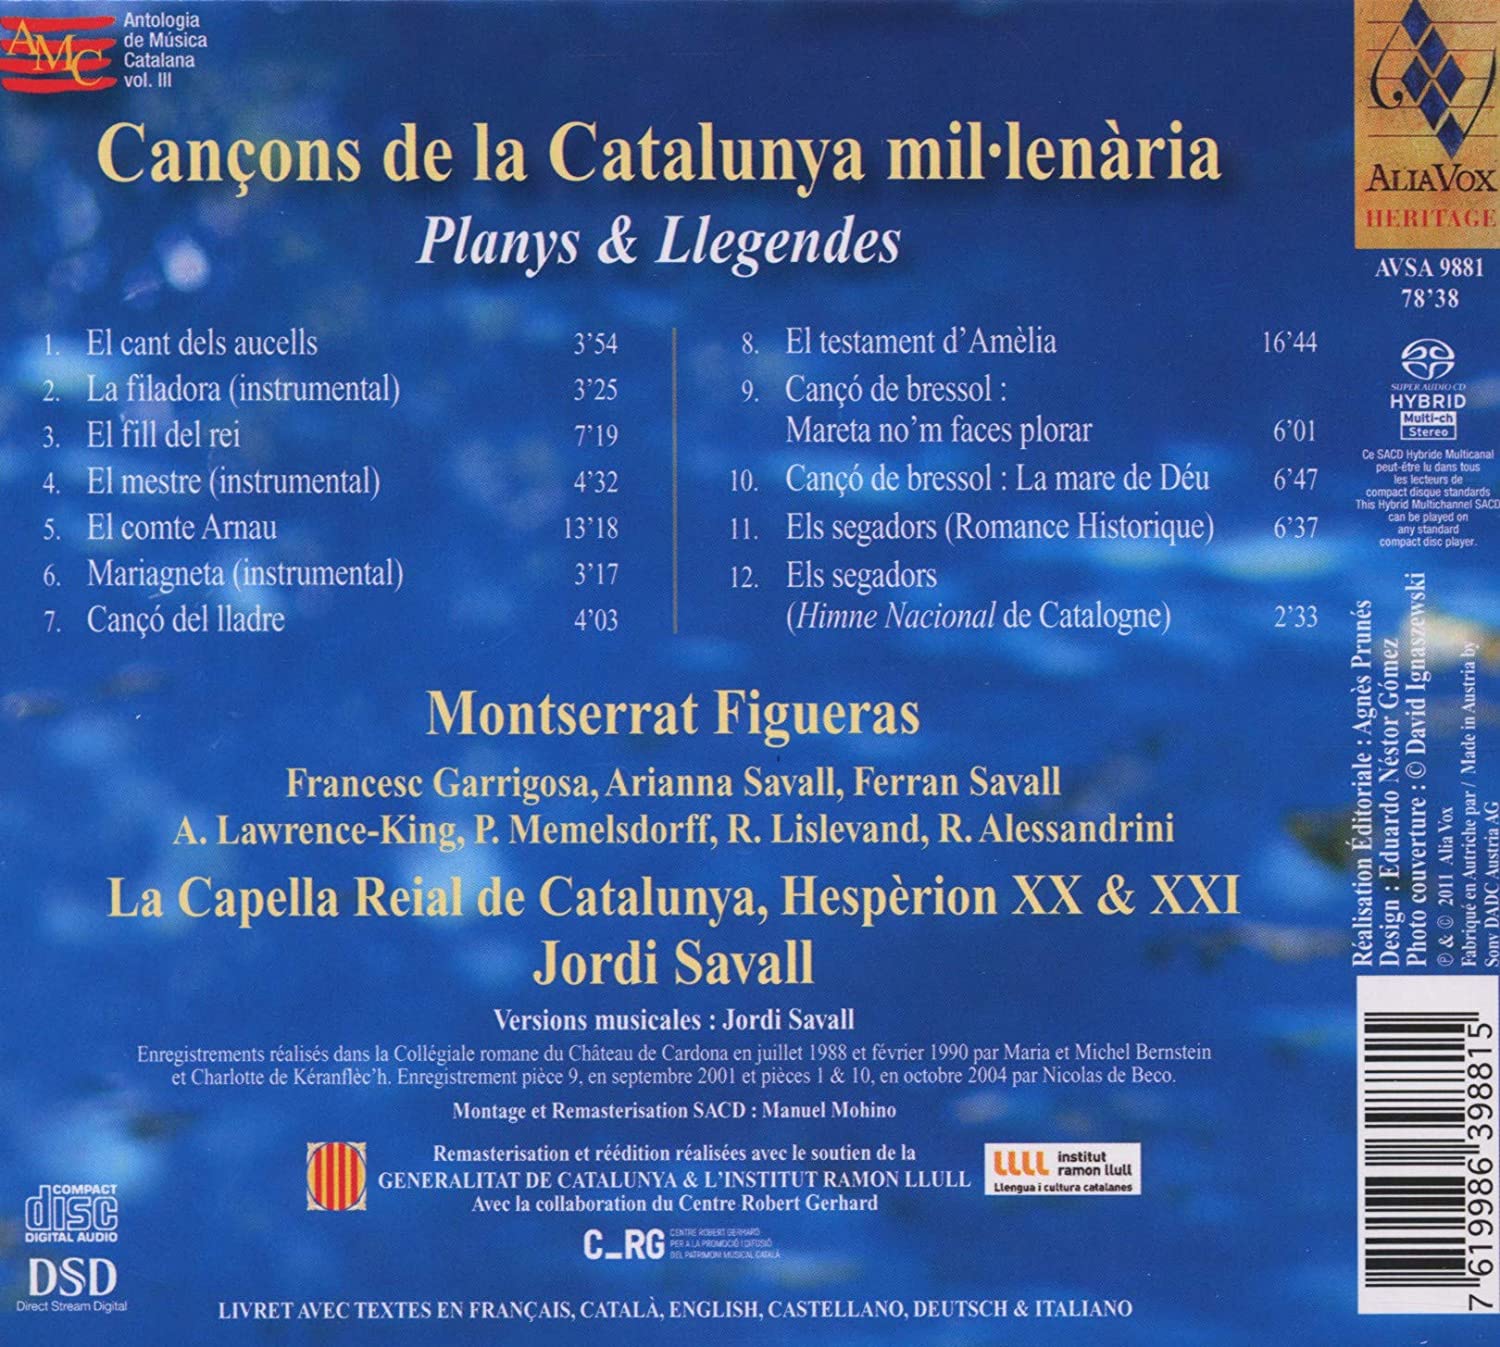 Cancons de la Catalunya mil.lenaria - slide-1